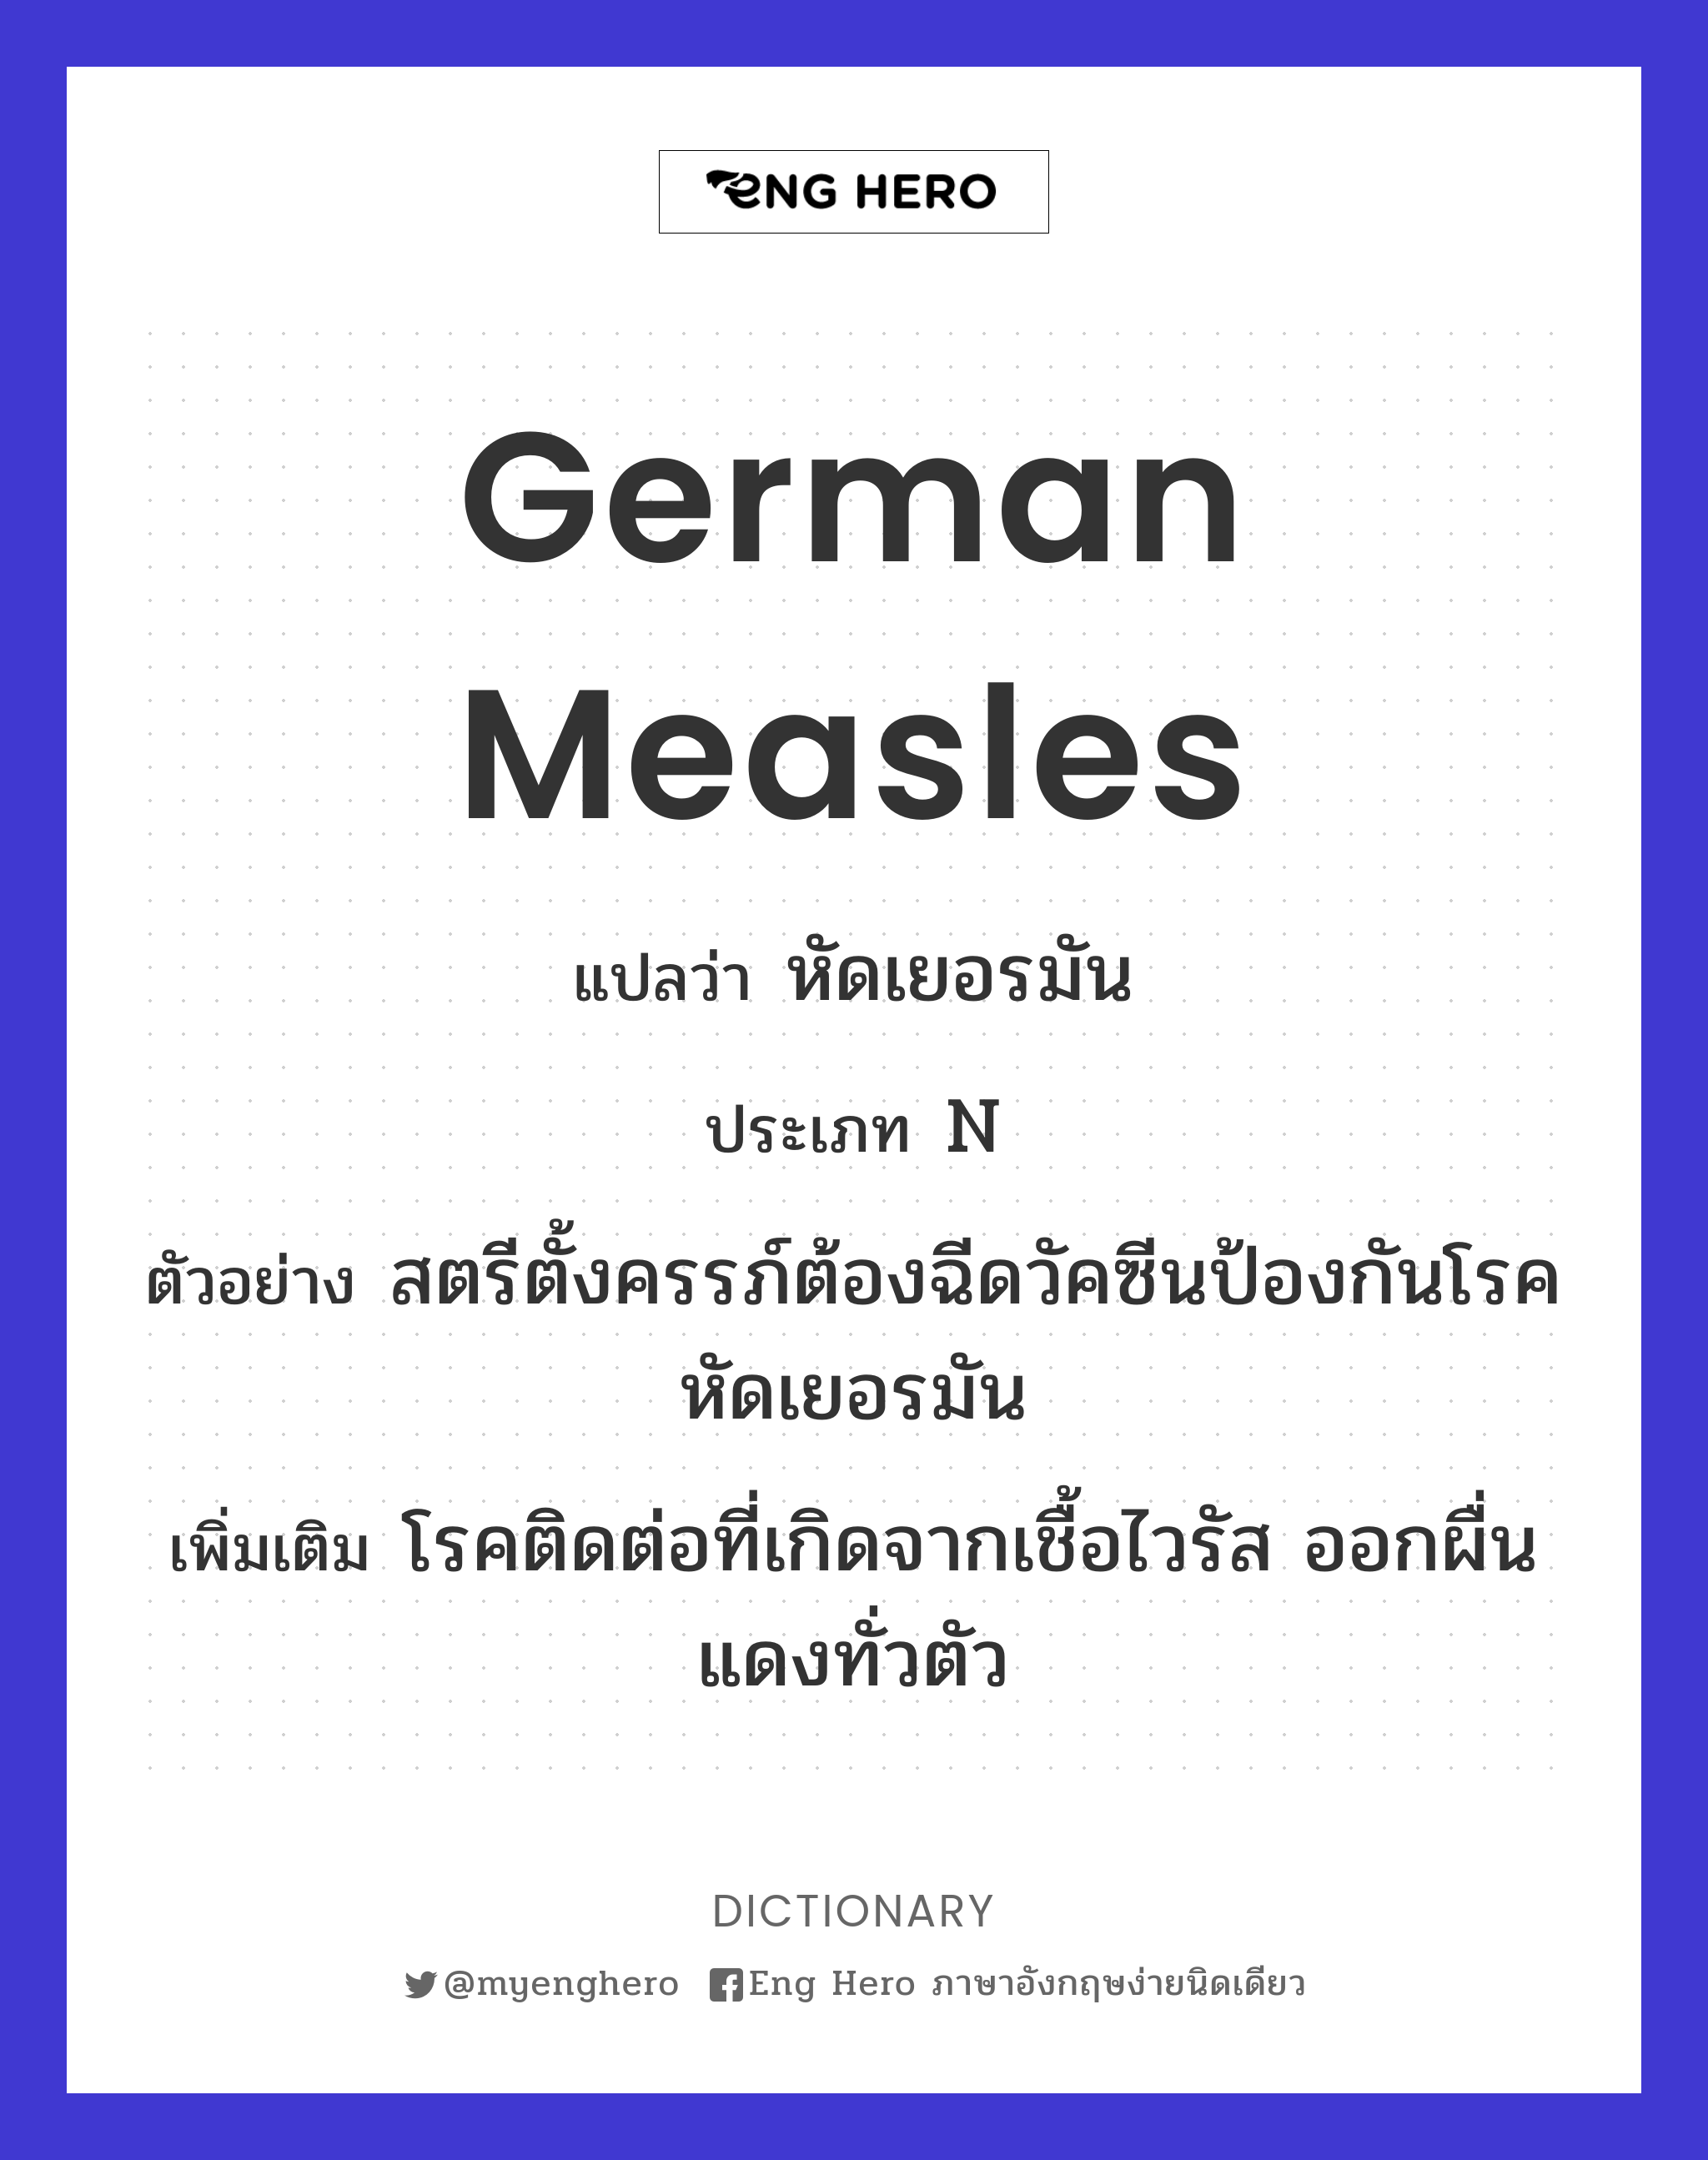 German measles